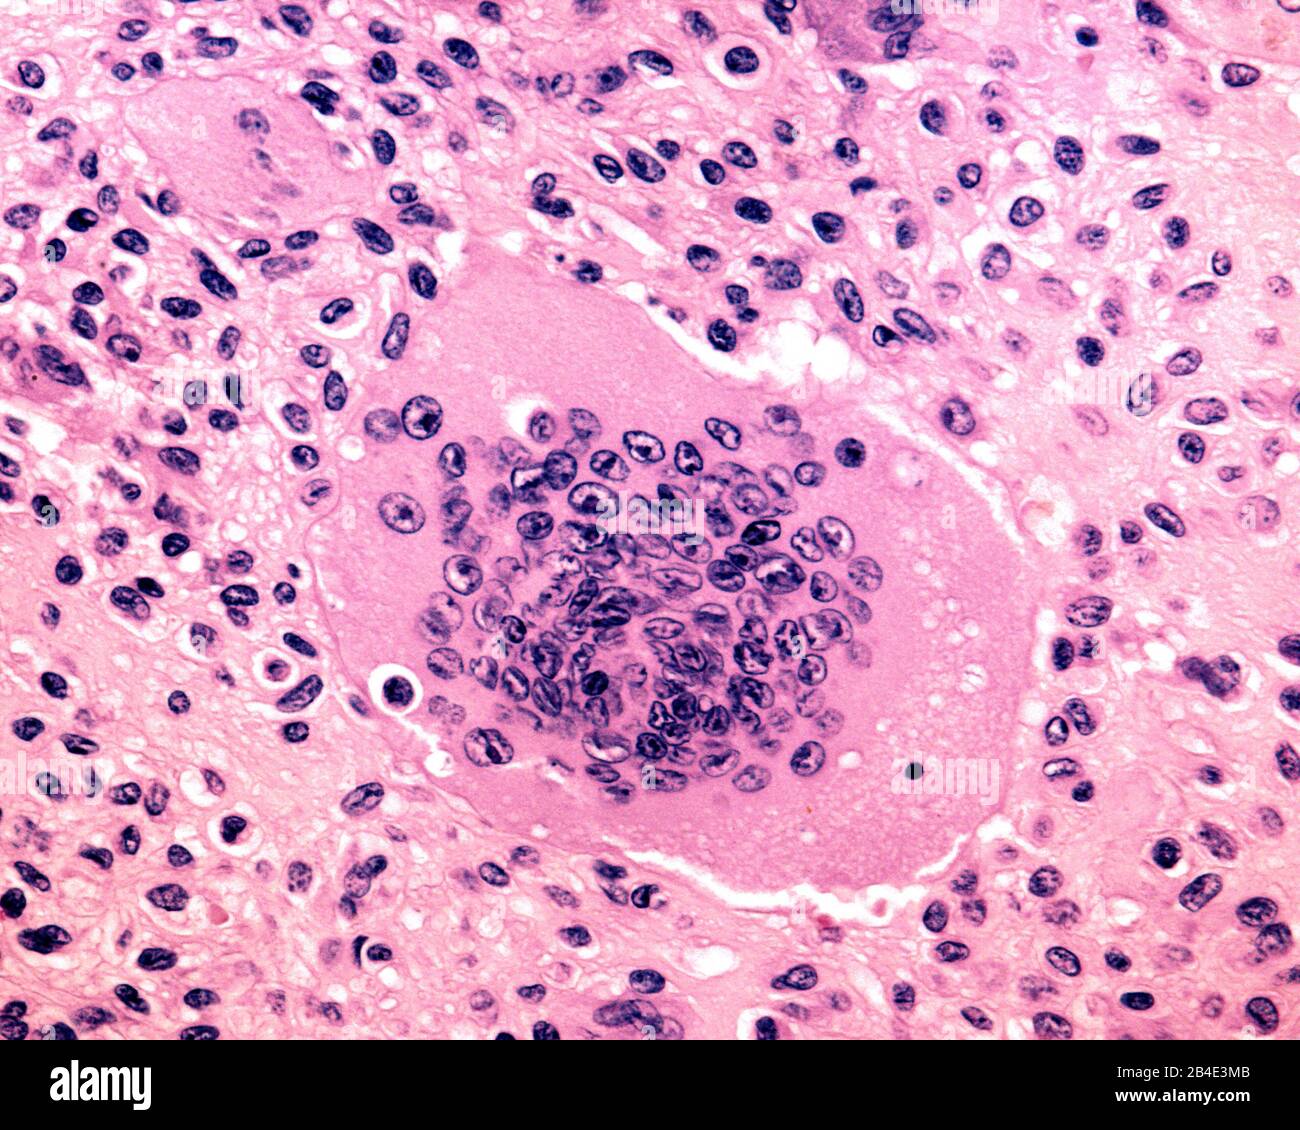 Cellule géante mutinucléée dérivée des ostéoclastes. Biopsie d’une tumeur osseuse à cellules géantes humaines. Micrographe lumineux. Banque D'Images